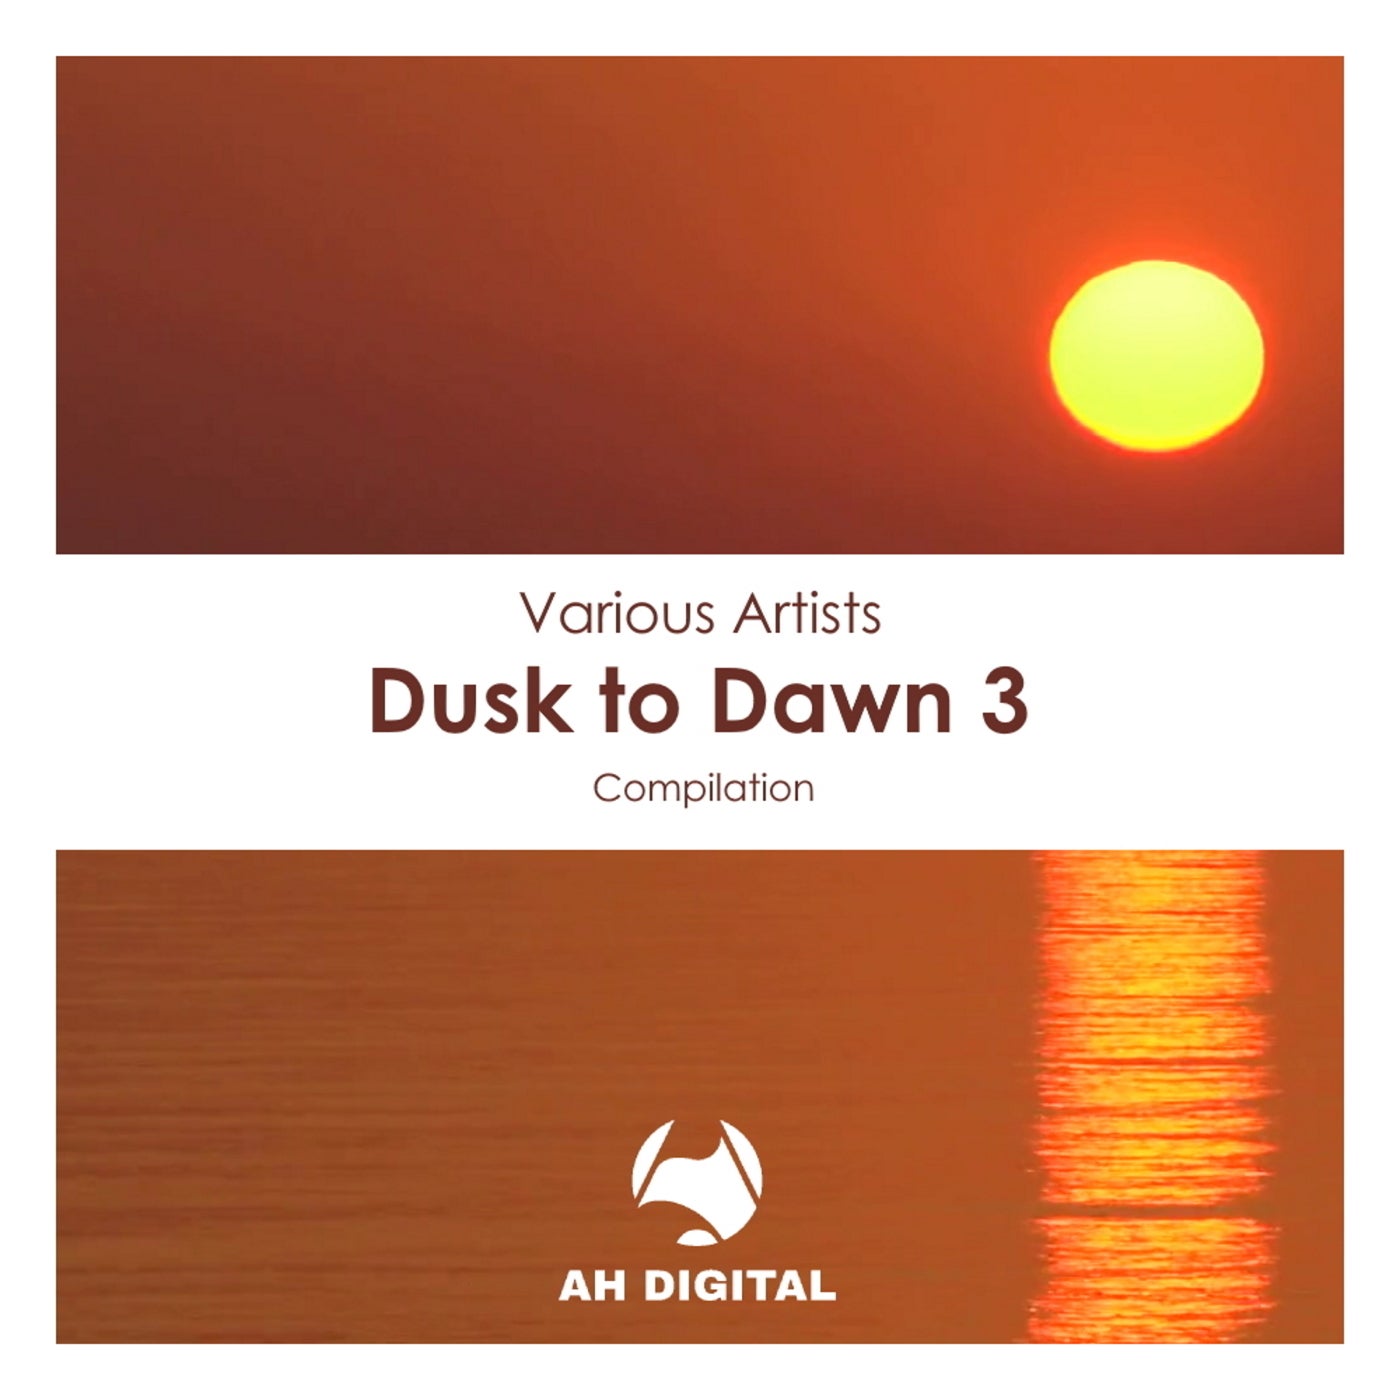 Dusk to Dawn 3